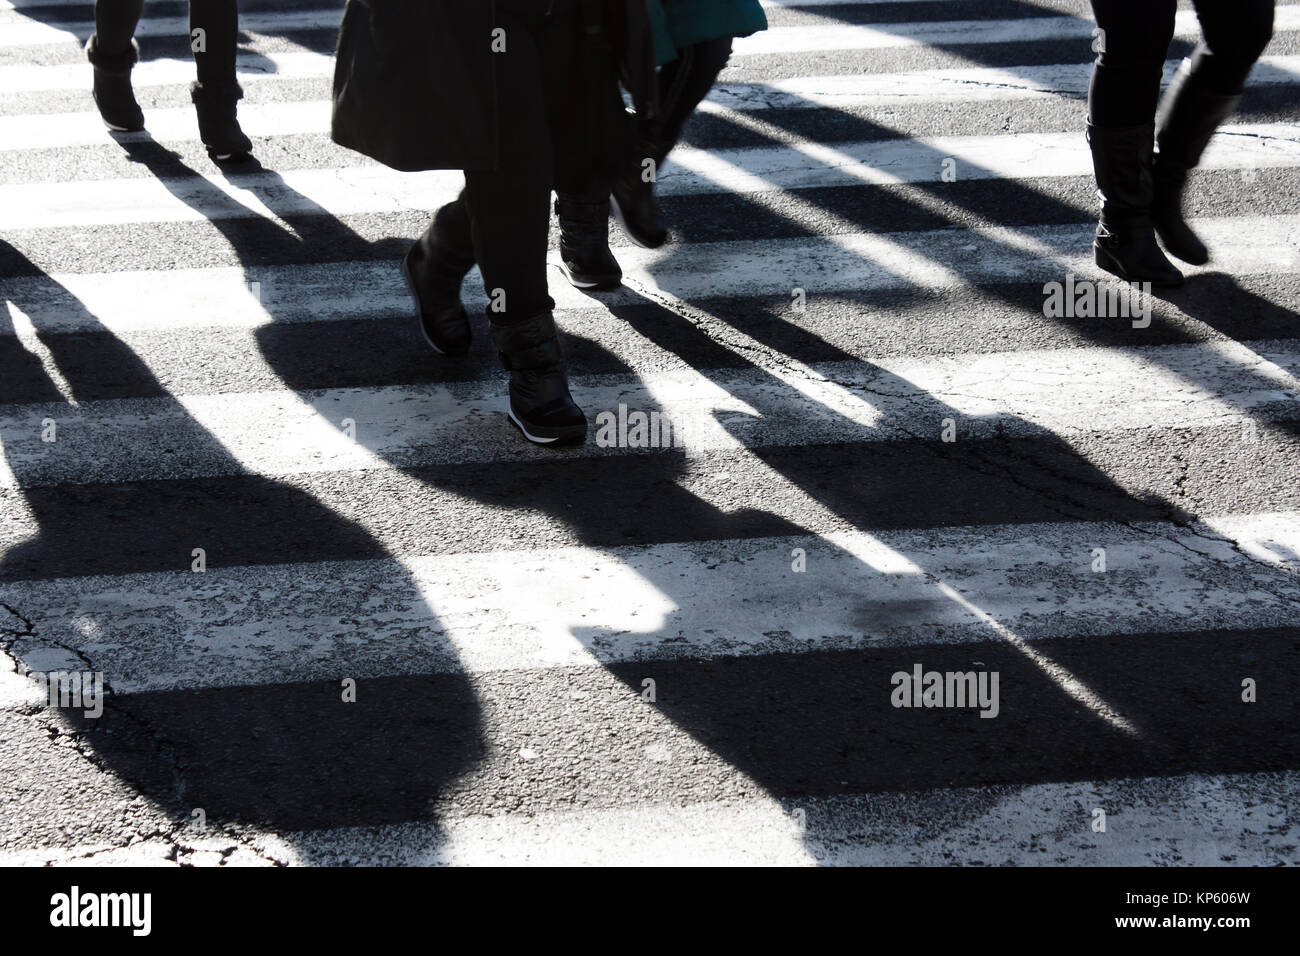 Schatten und Silhouetten, die Überquerung der Straße im Winter in Schwarz und Weiß Stockfoto